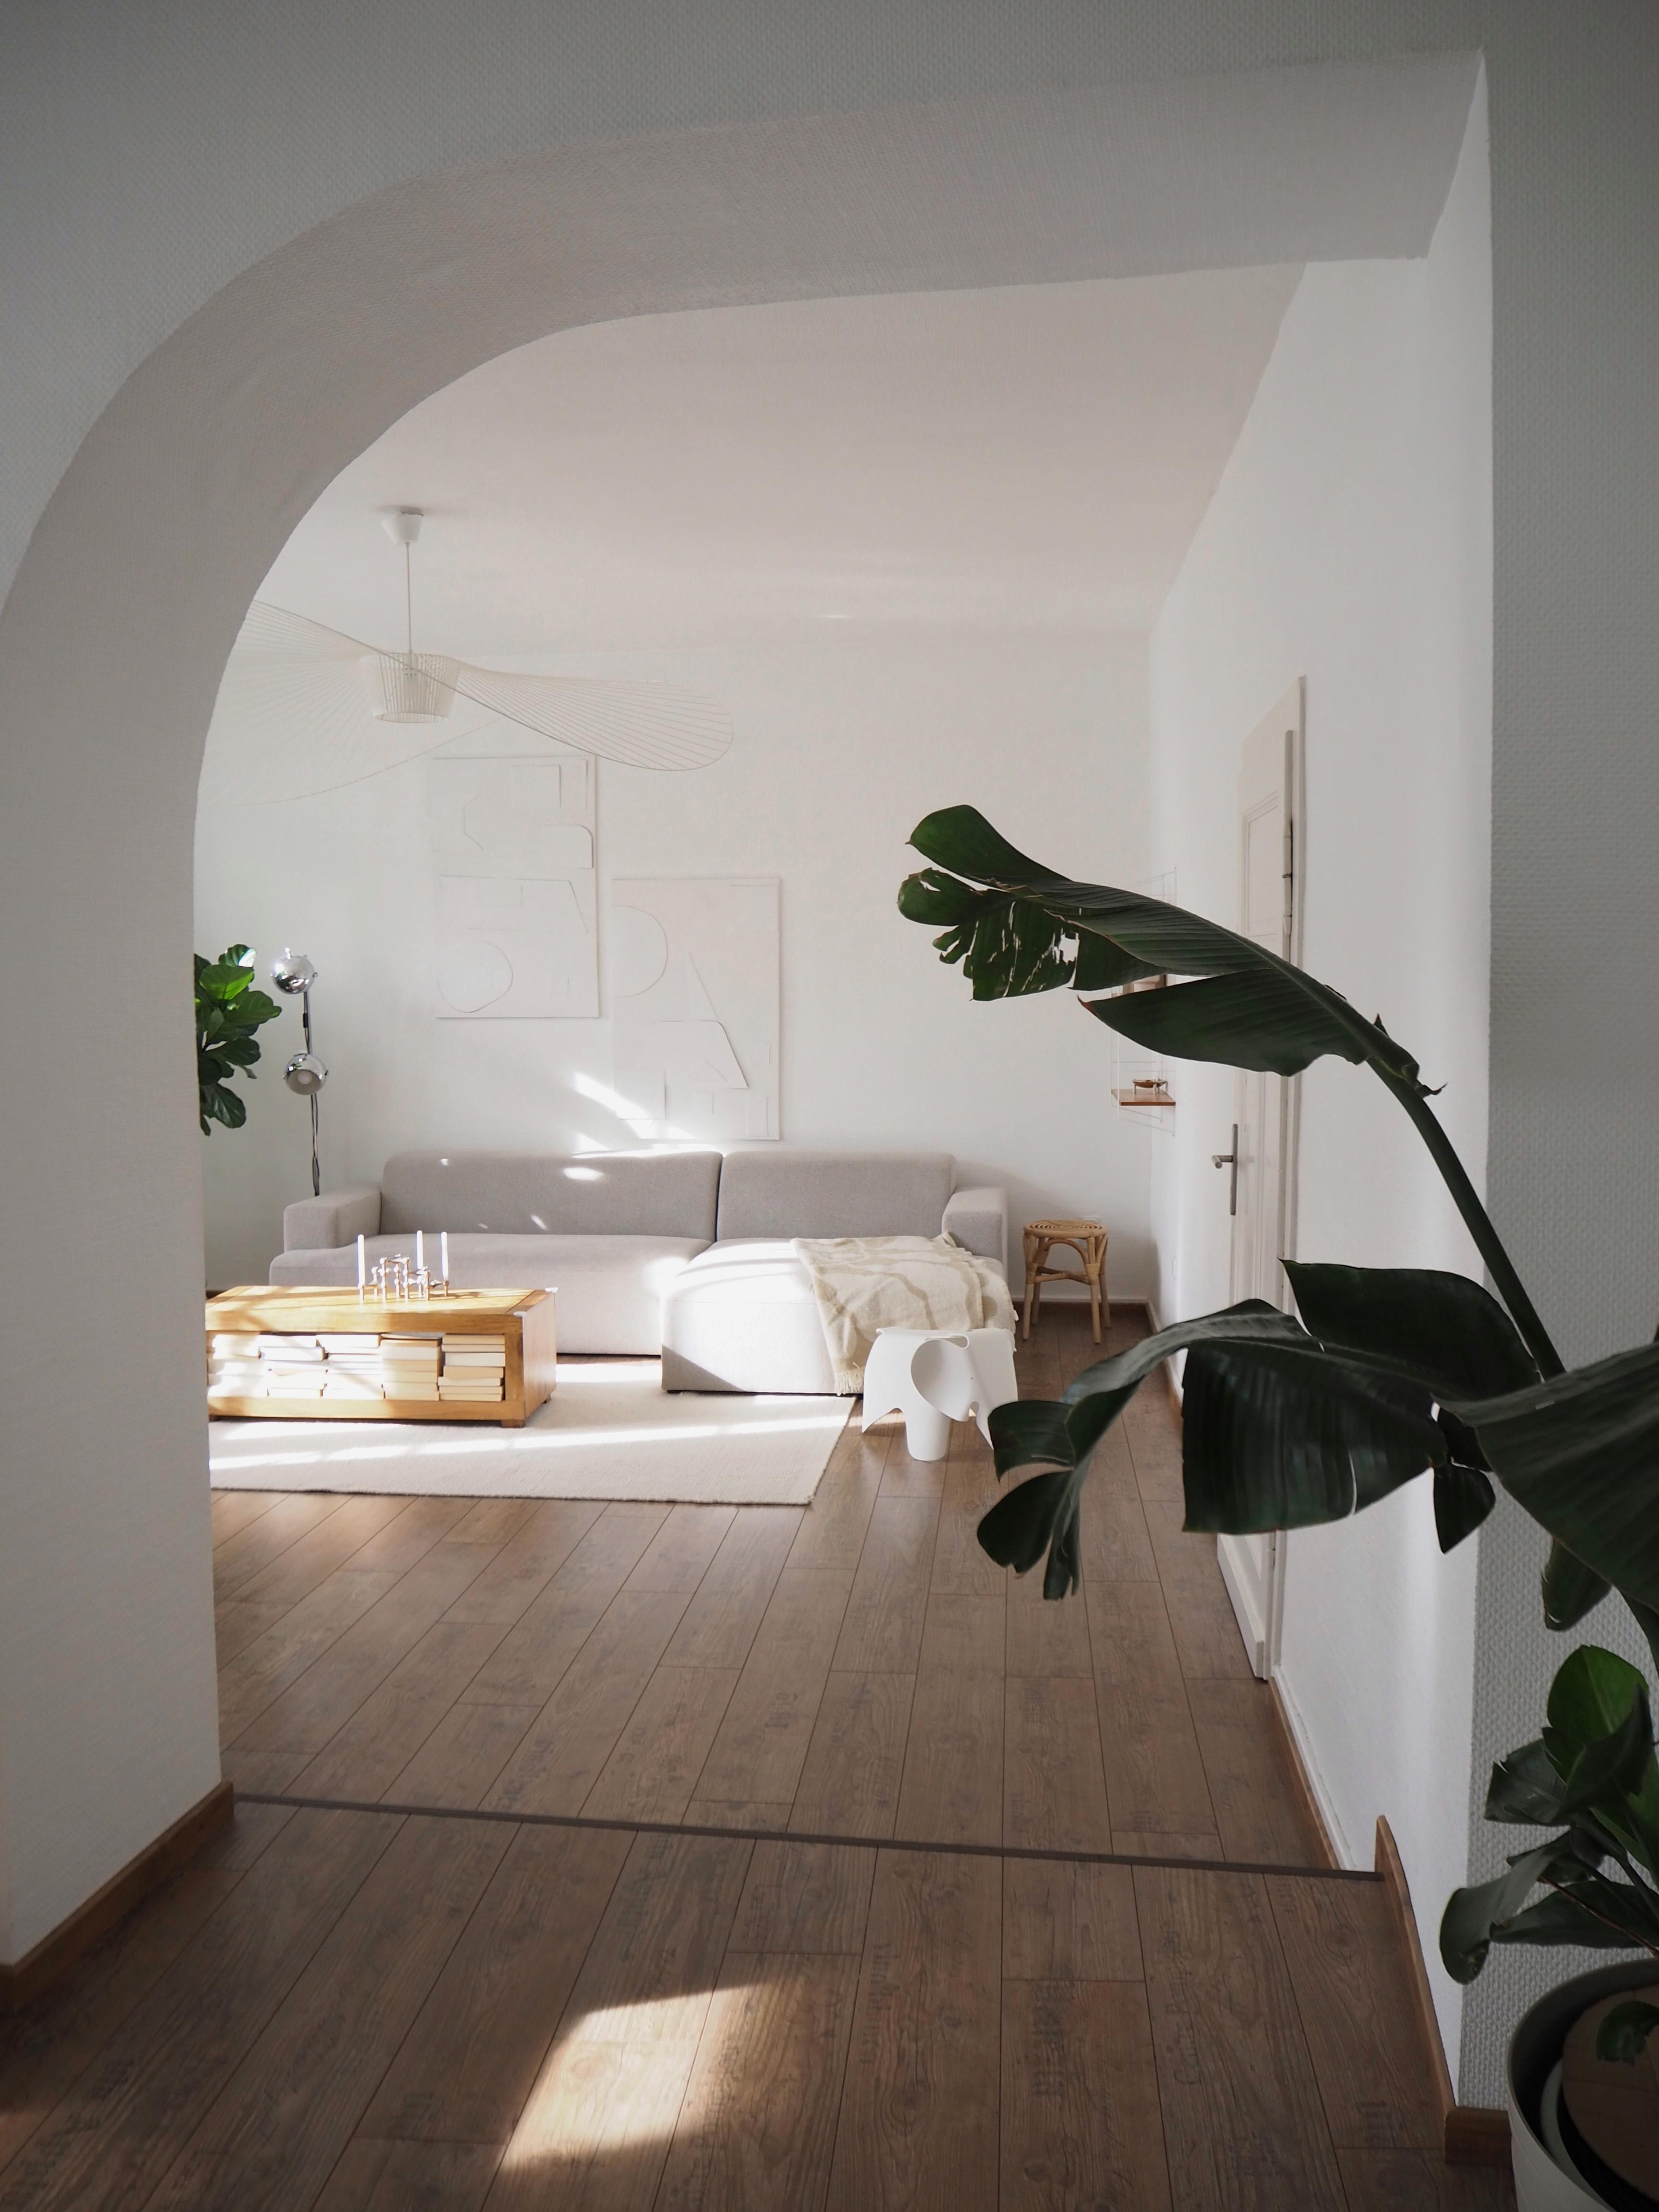 #wohnzimmer #rundbogen #altbauliebe #sofaecke #scandistyle #japandi #hygge #wohnzimmerinspo #couch #pflanzen #westerwald